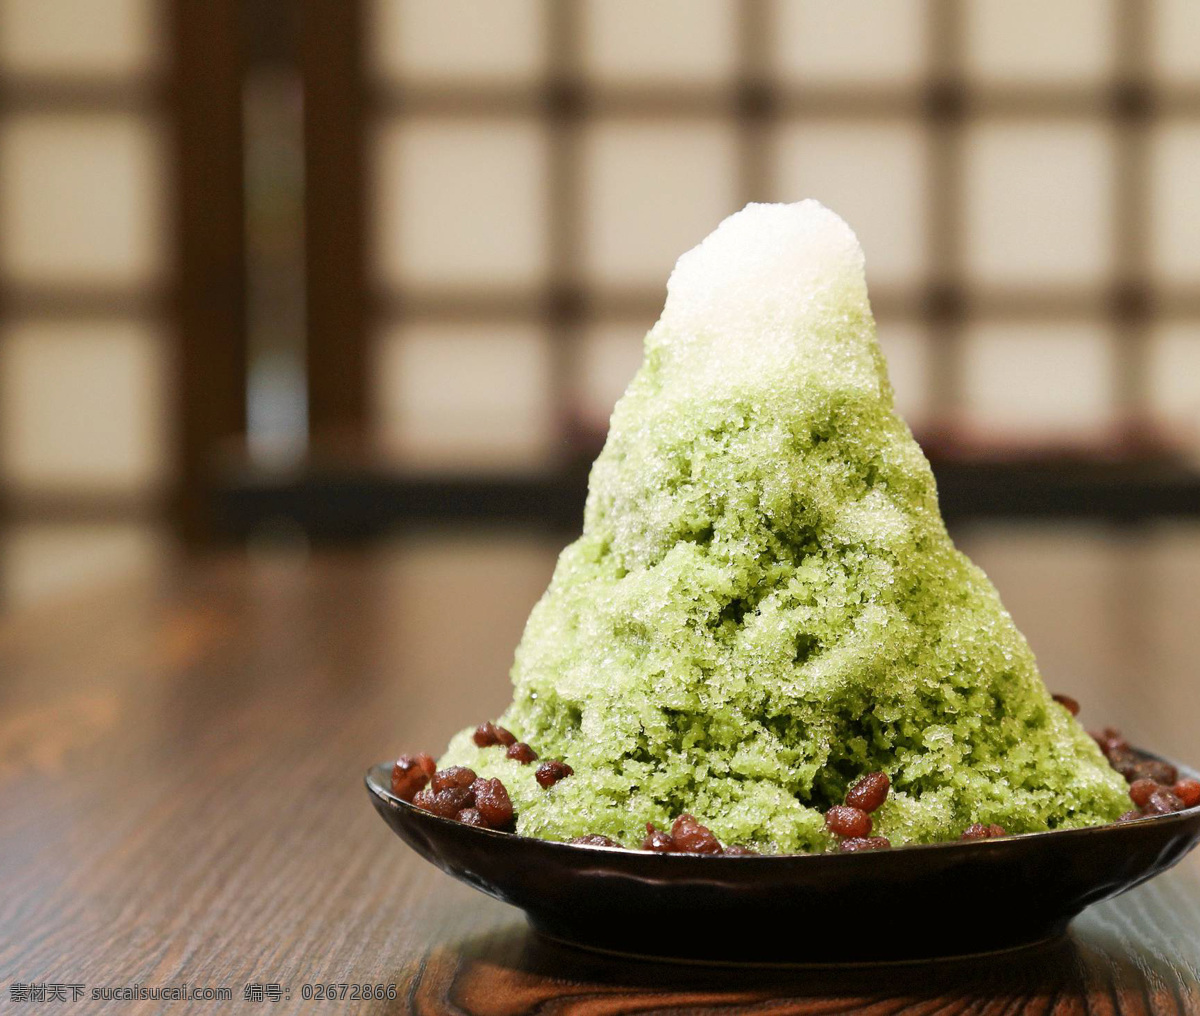 富士山 刨冰 甜品 冰品 冷食 冰沙 甜点 草莓 冷饮 沙冰 鲜果 果浆 果肉 果汁饮料 果肉饮料 静物 餐饮美食 传统美食